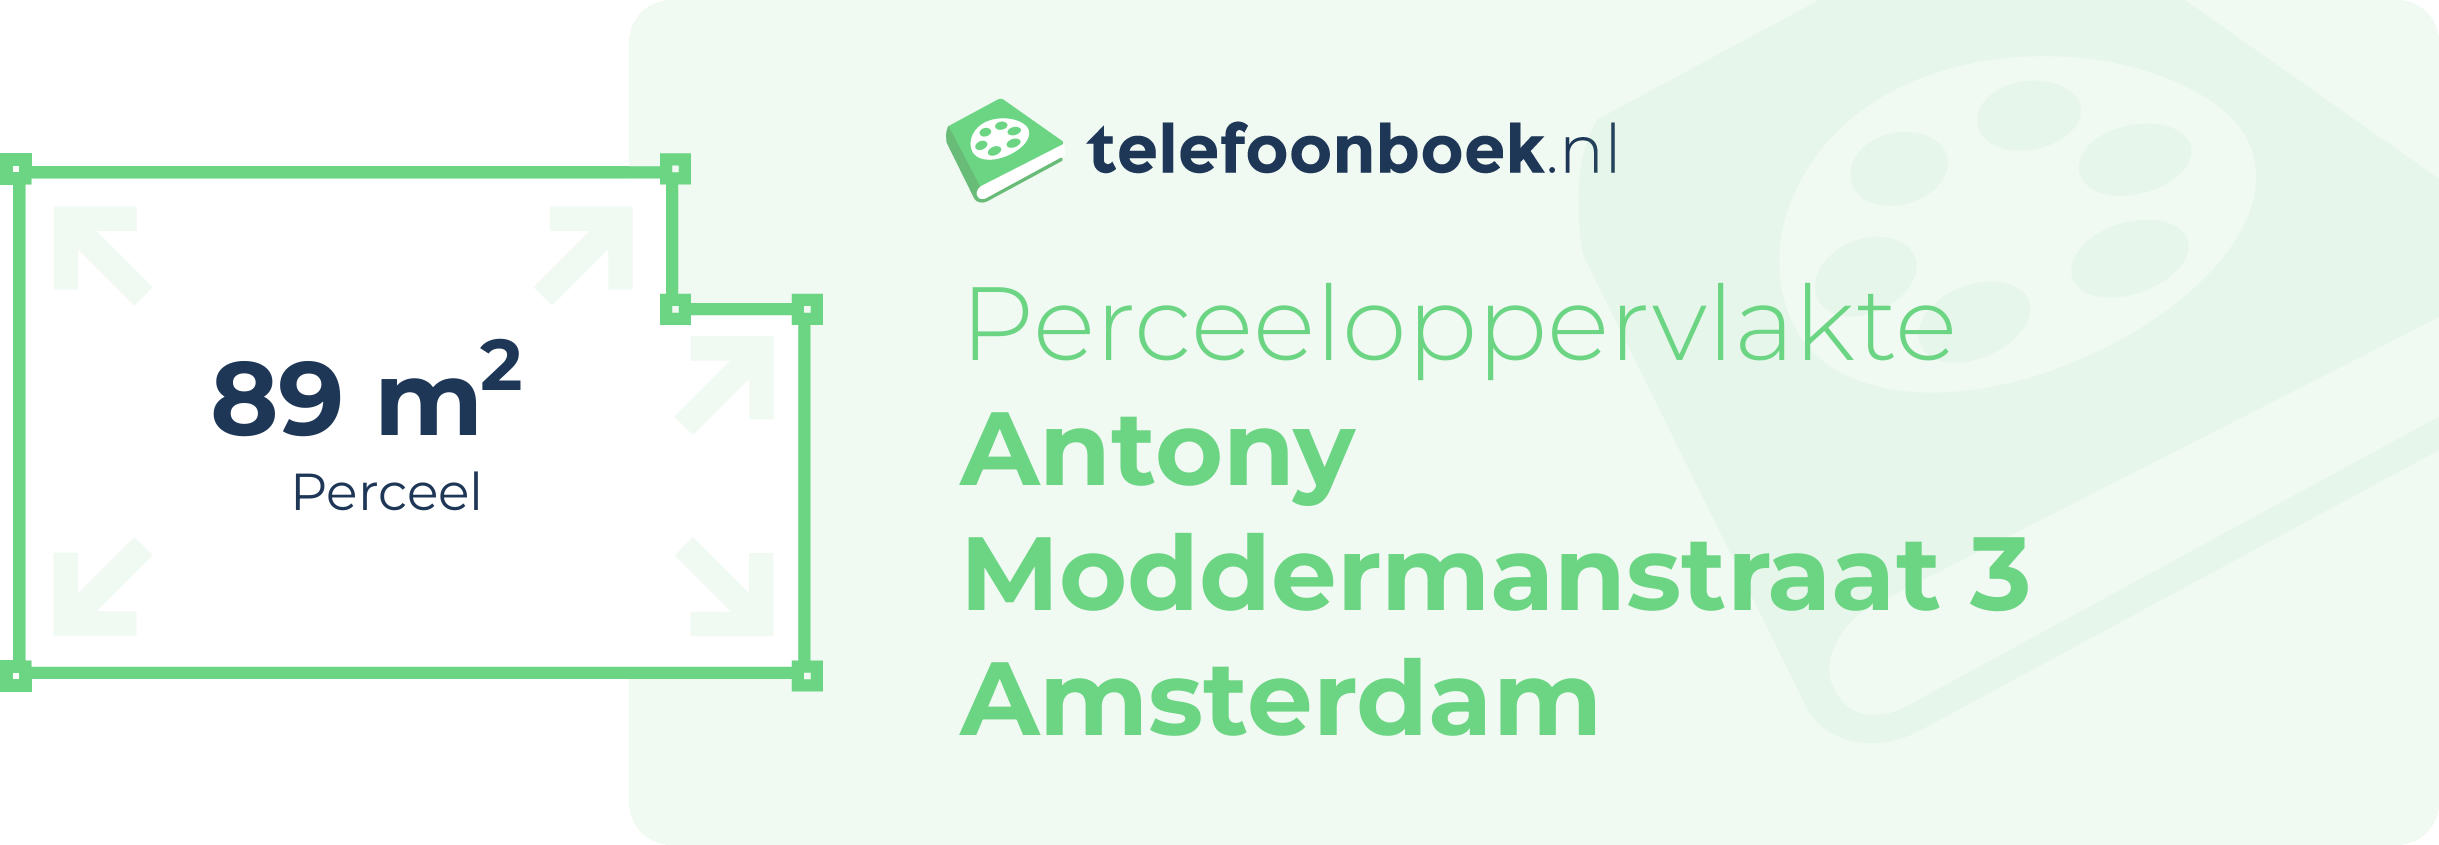 Perceeloppervlakte Antony Moddermanstraat 3 Amsterdam